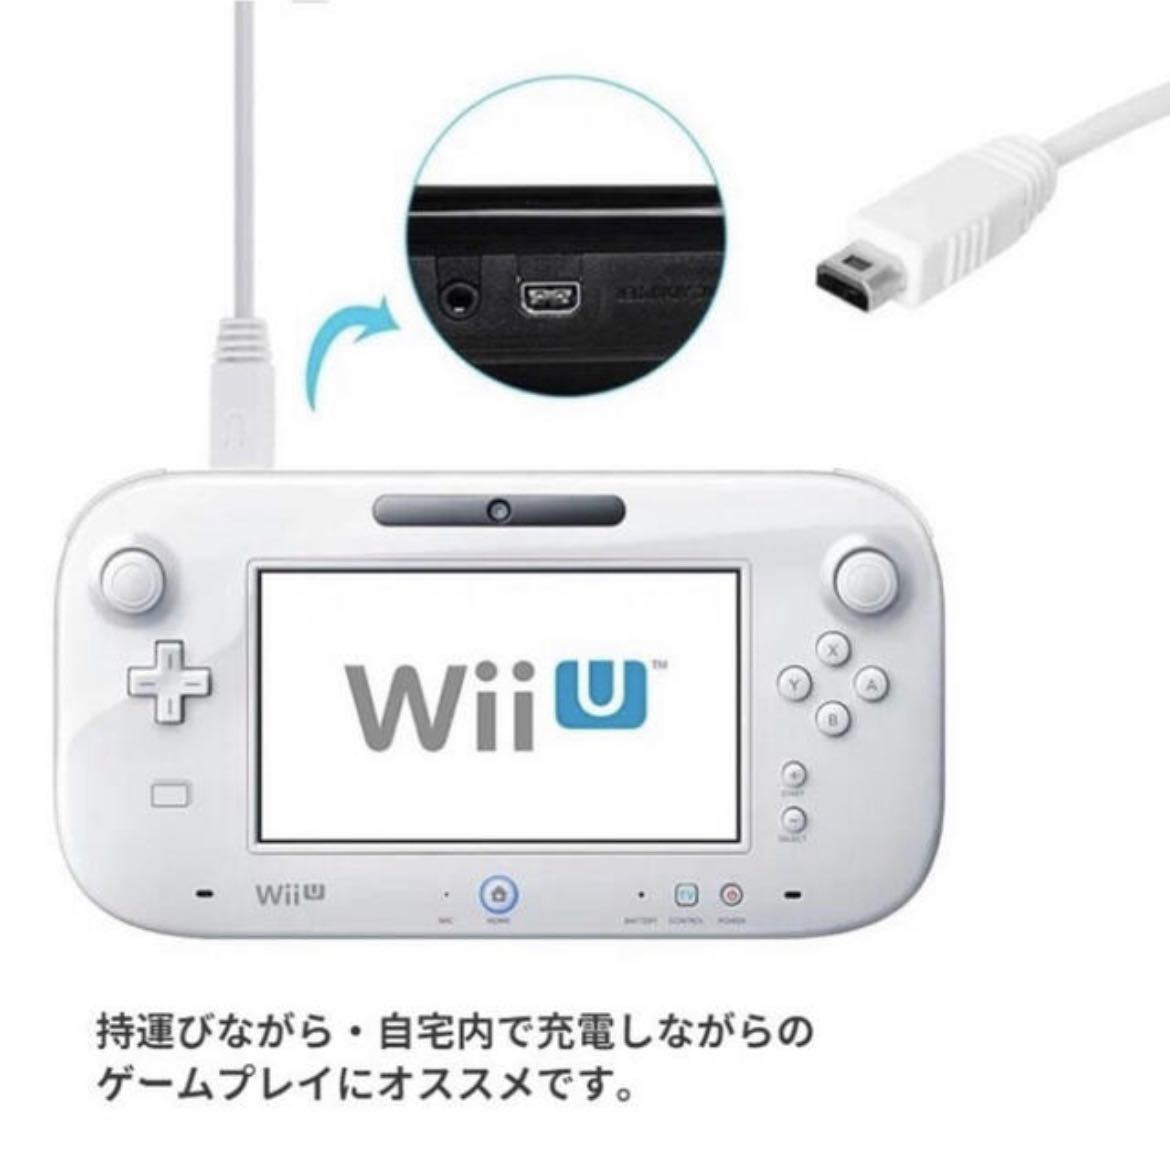 Wii U зарядка кабель игра накладка внезапный скорость зарядка зарядное устройство 1.2m